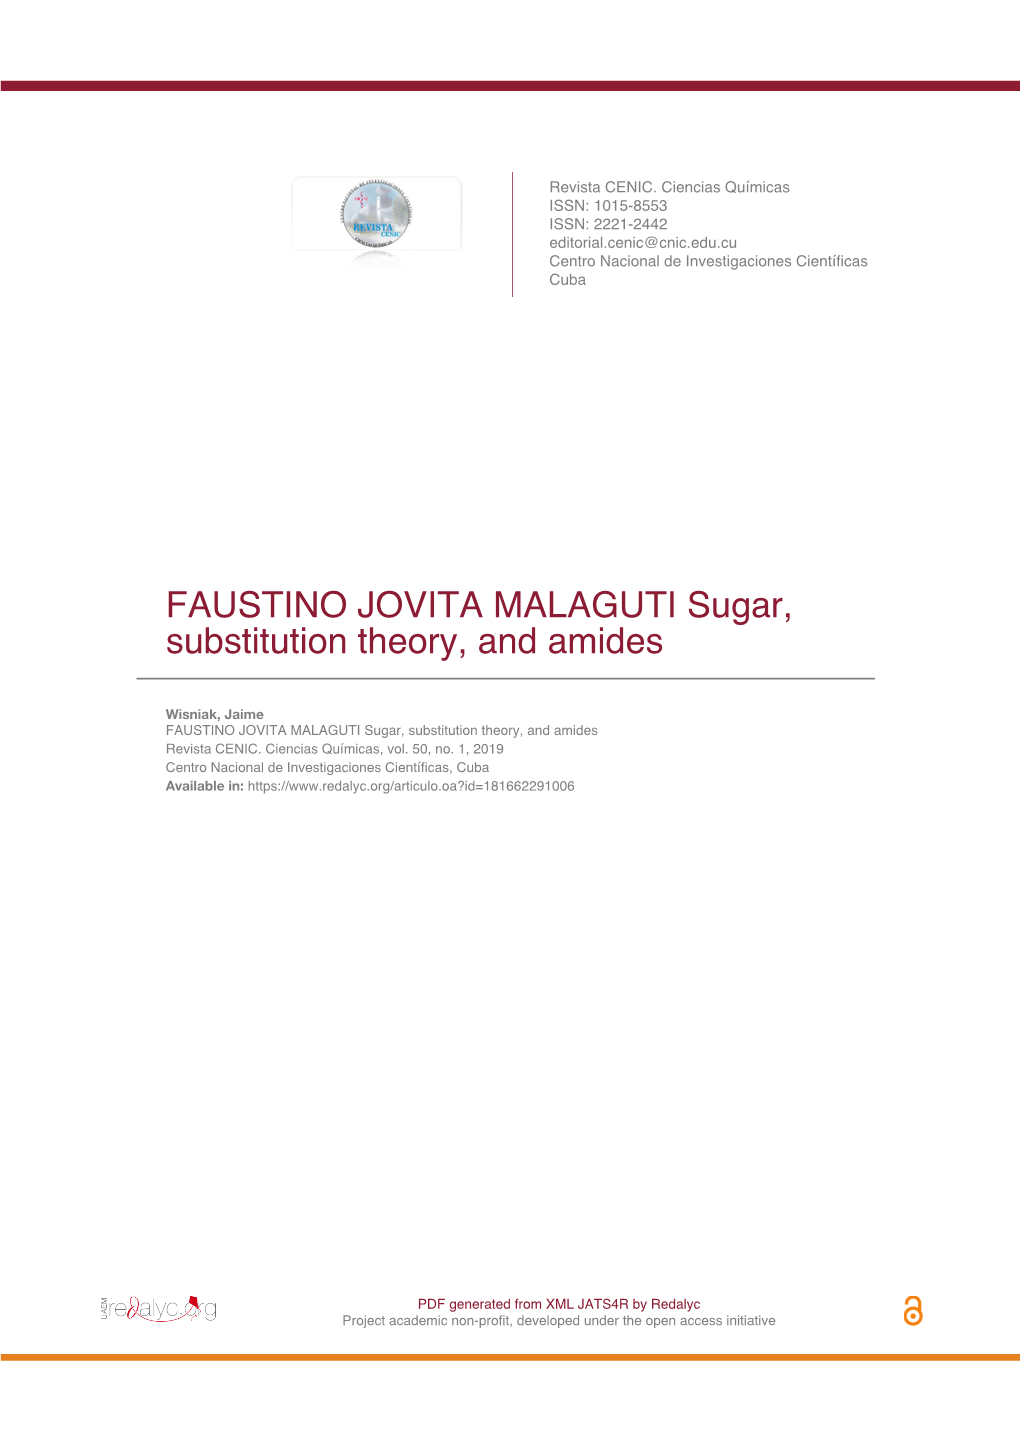 FAUSTINO JOVITA MALAGUTI Sugar, Substitution Theory, and Amides